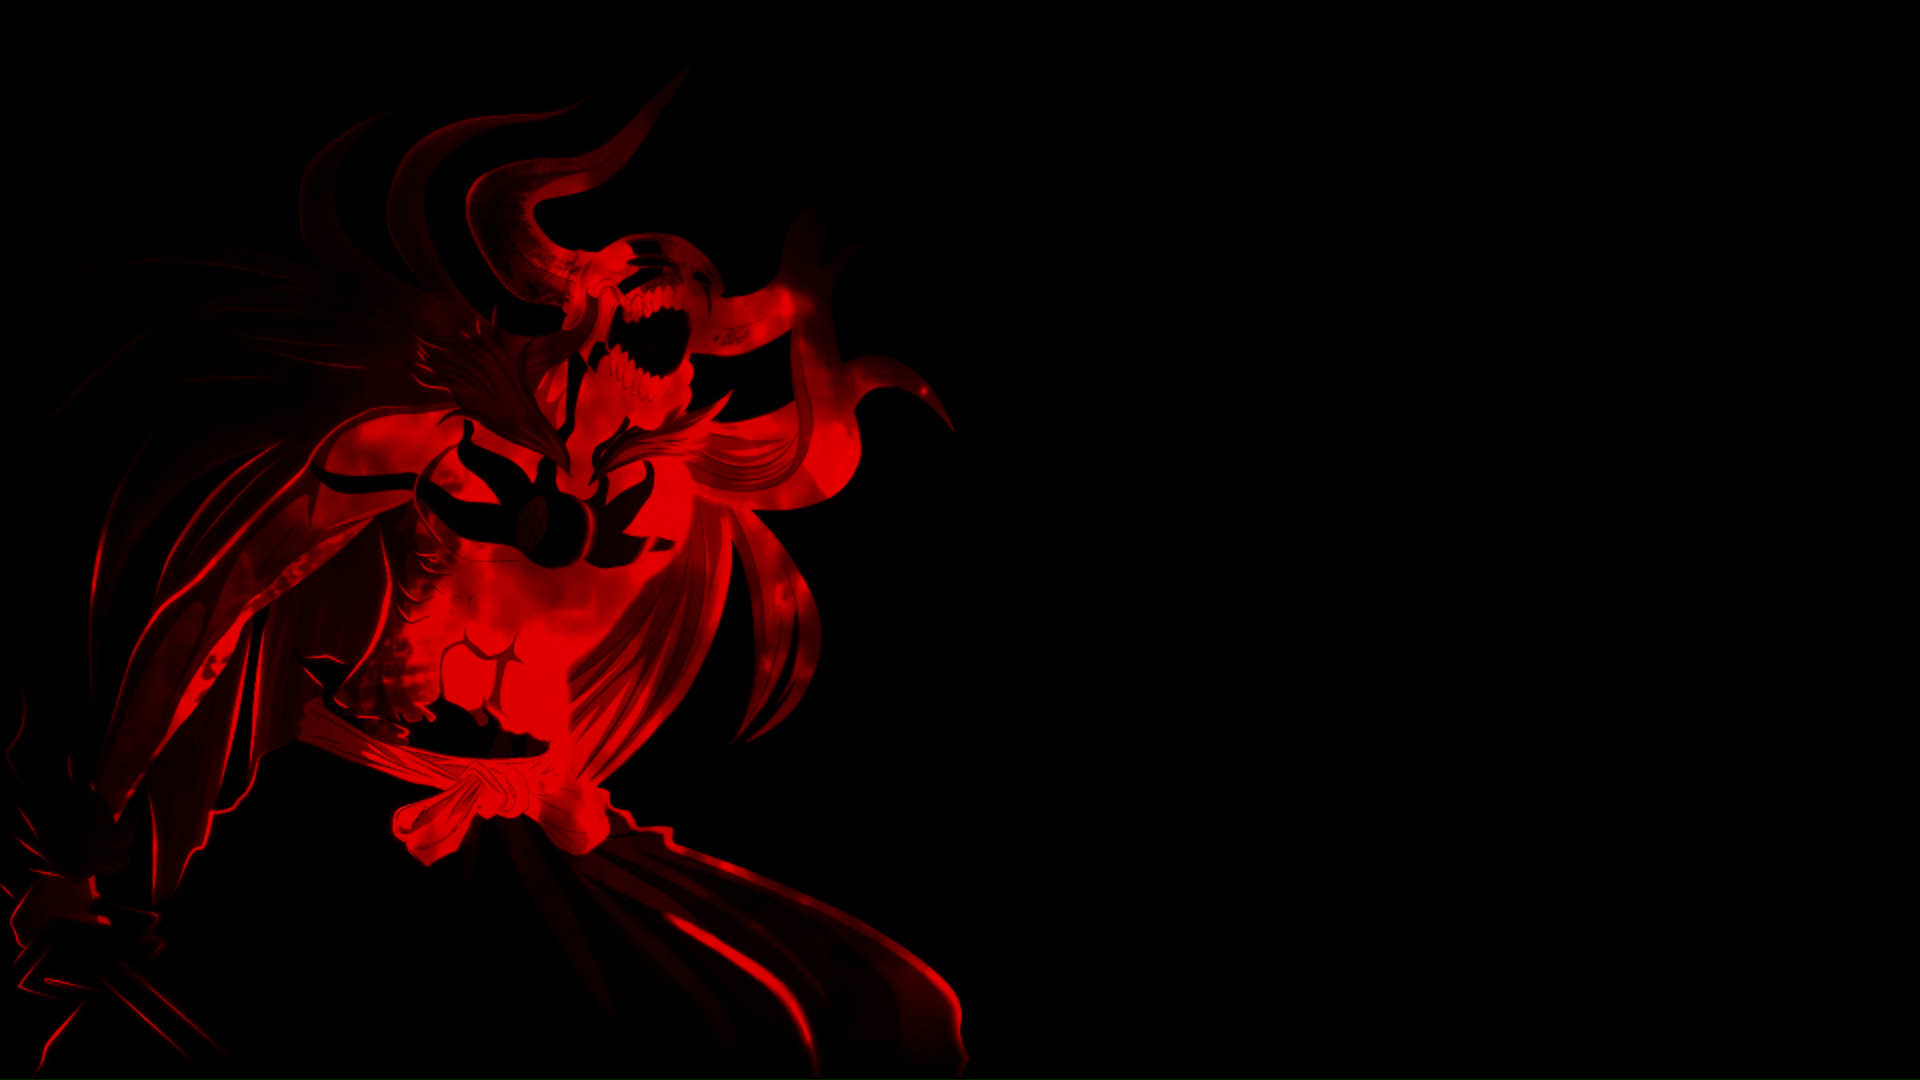 Bleach Ichigo Vasto Lorde (black fire animation) Live Wallpaper